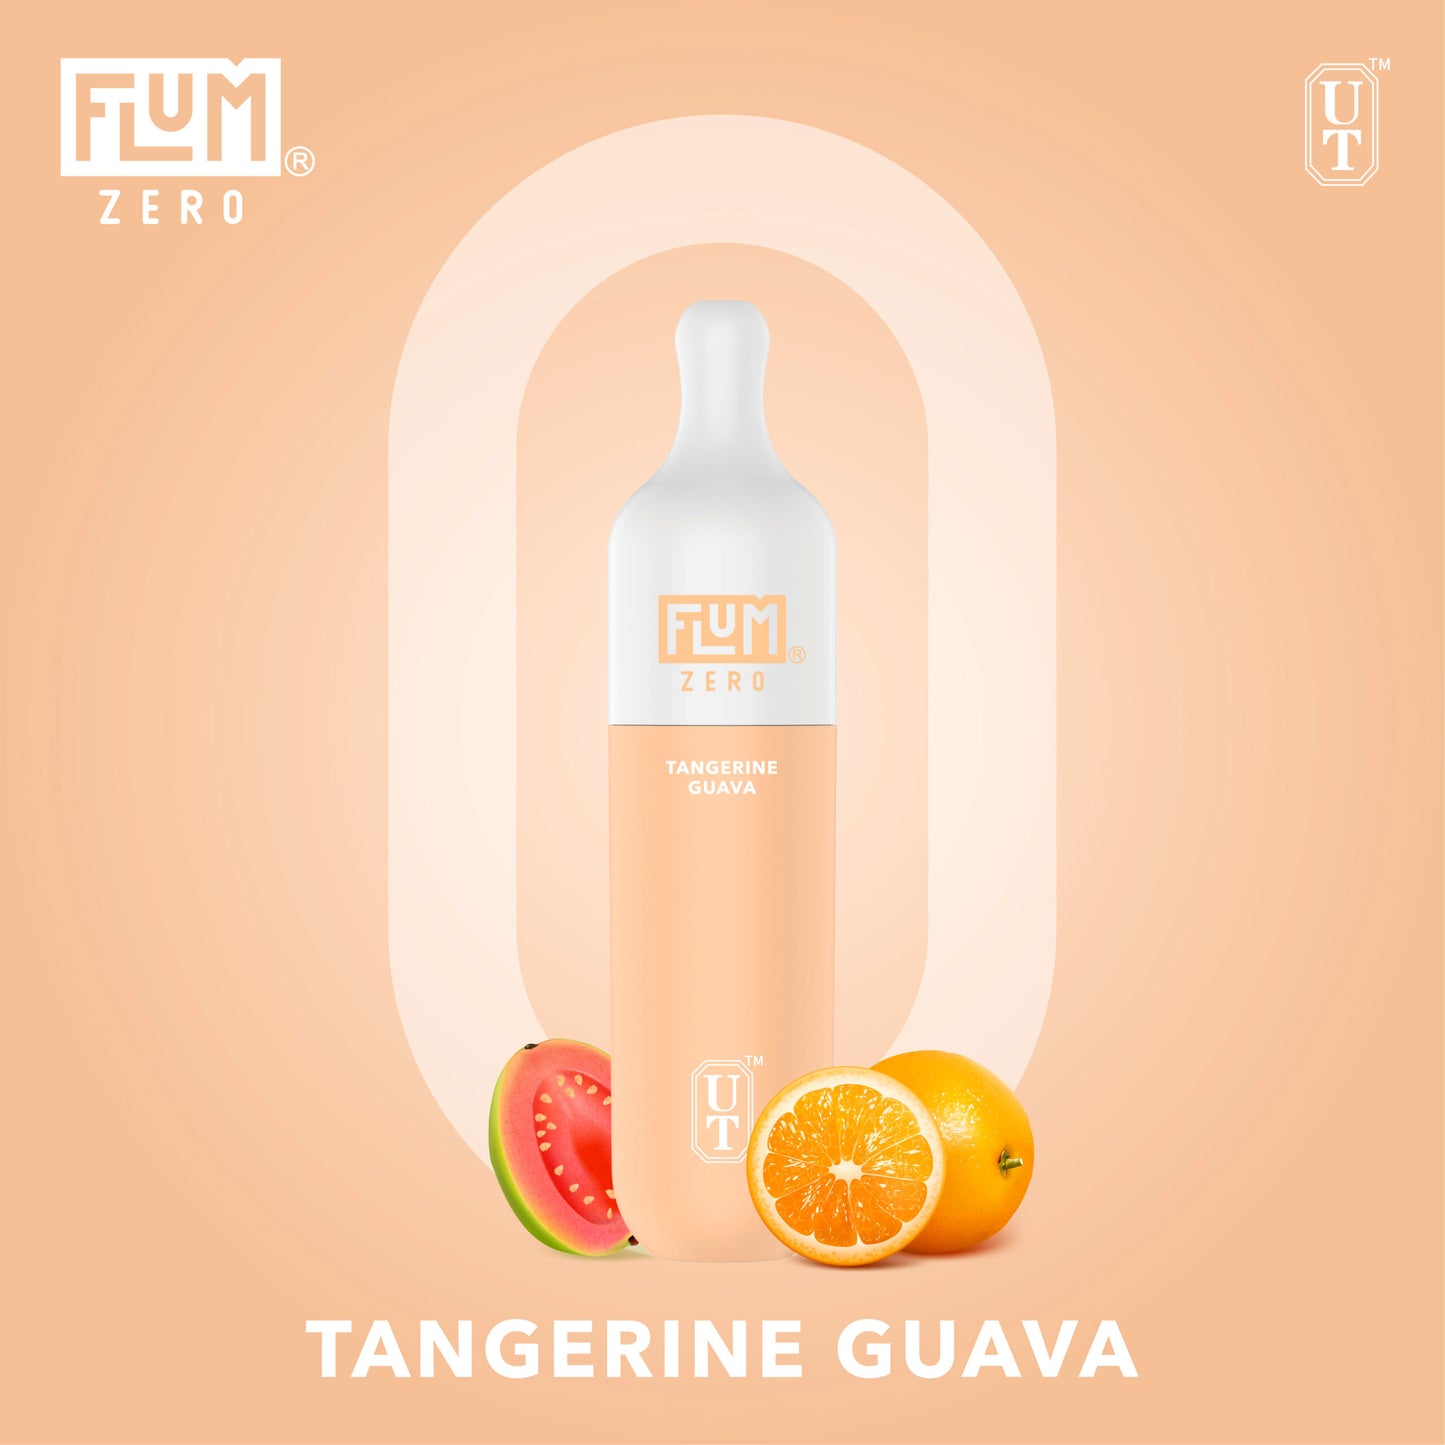 FLUM Float Zero - Tangerine Guava